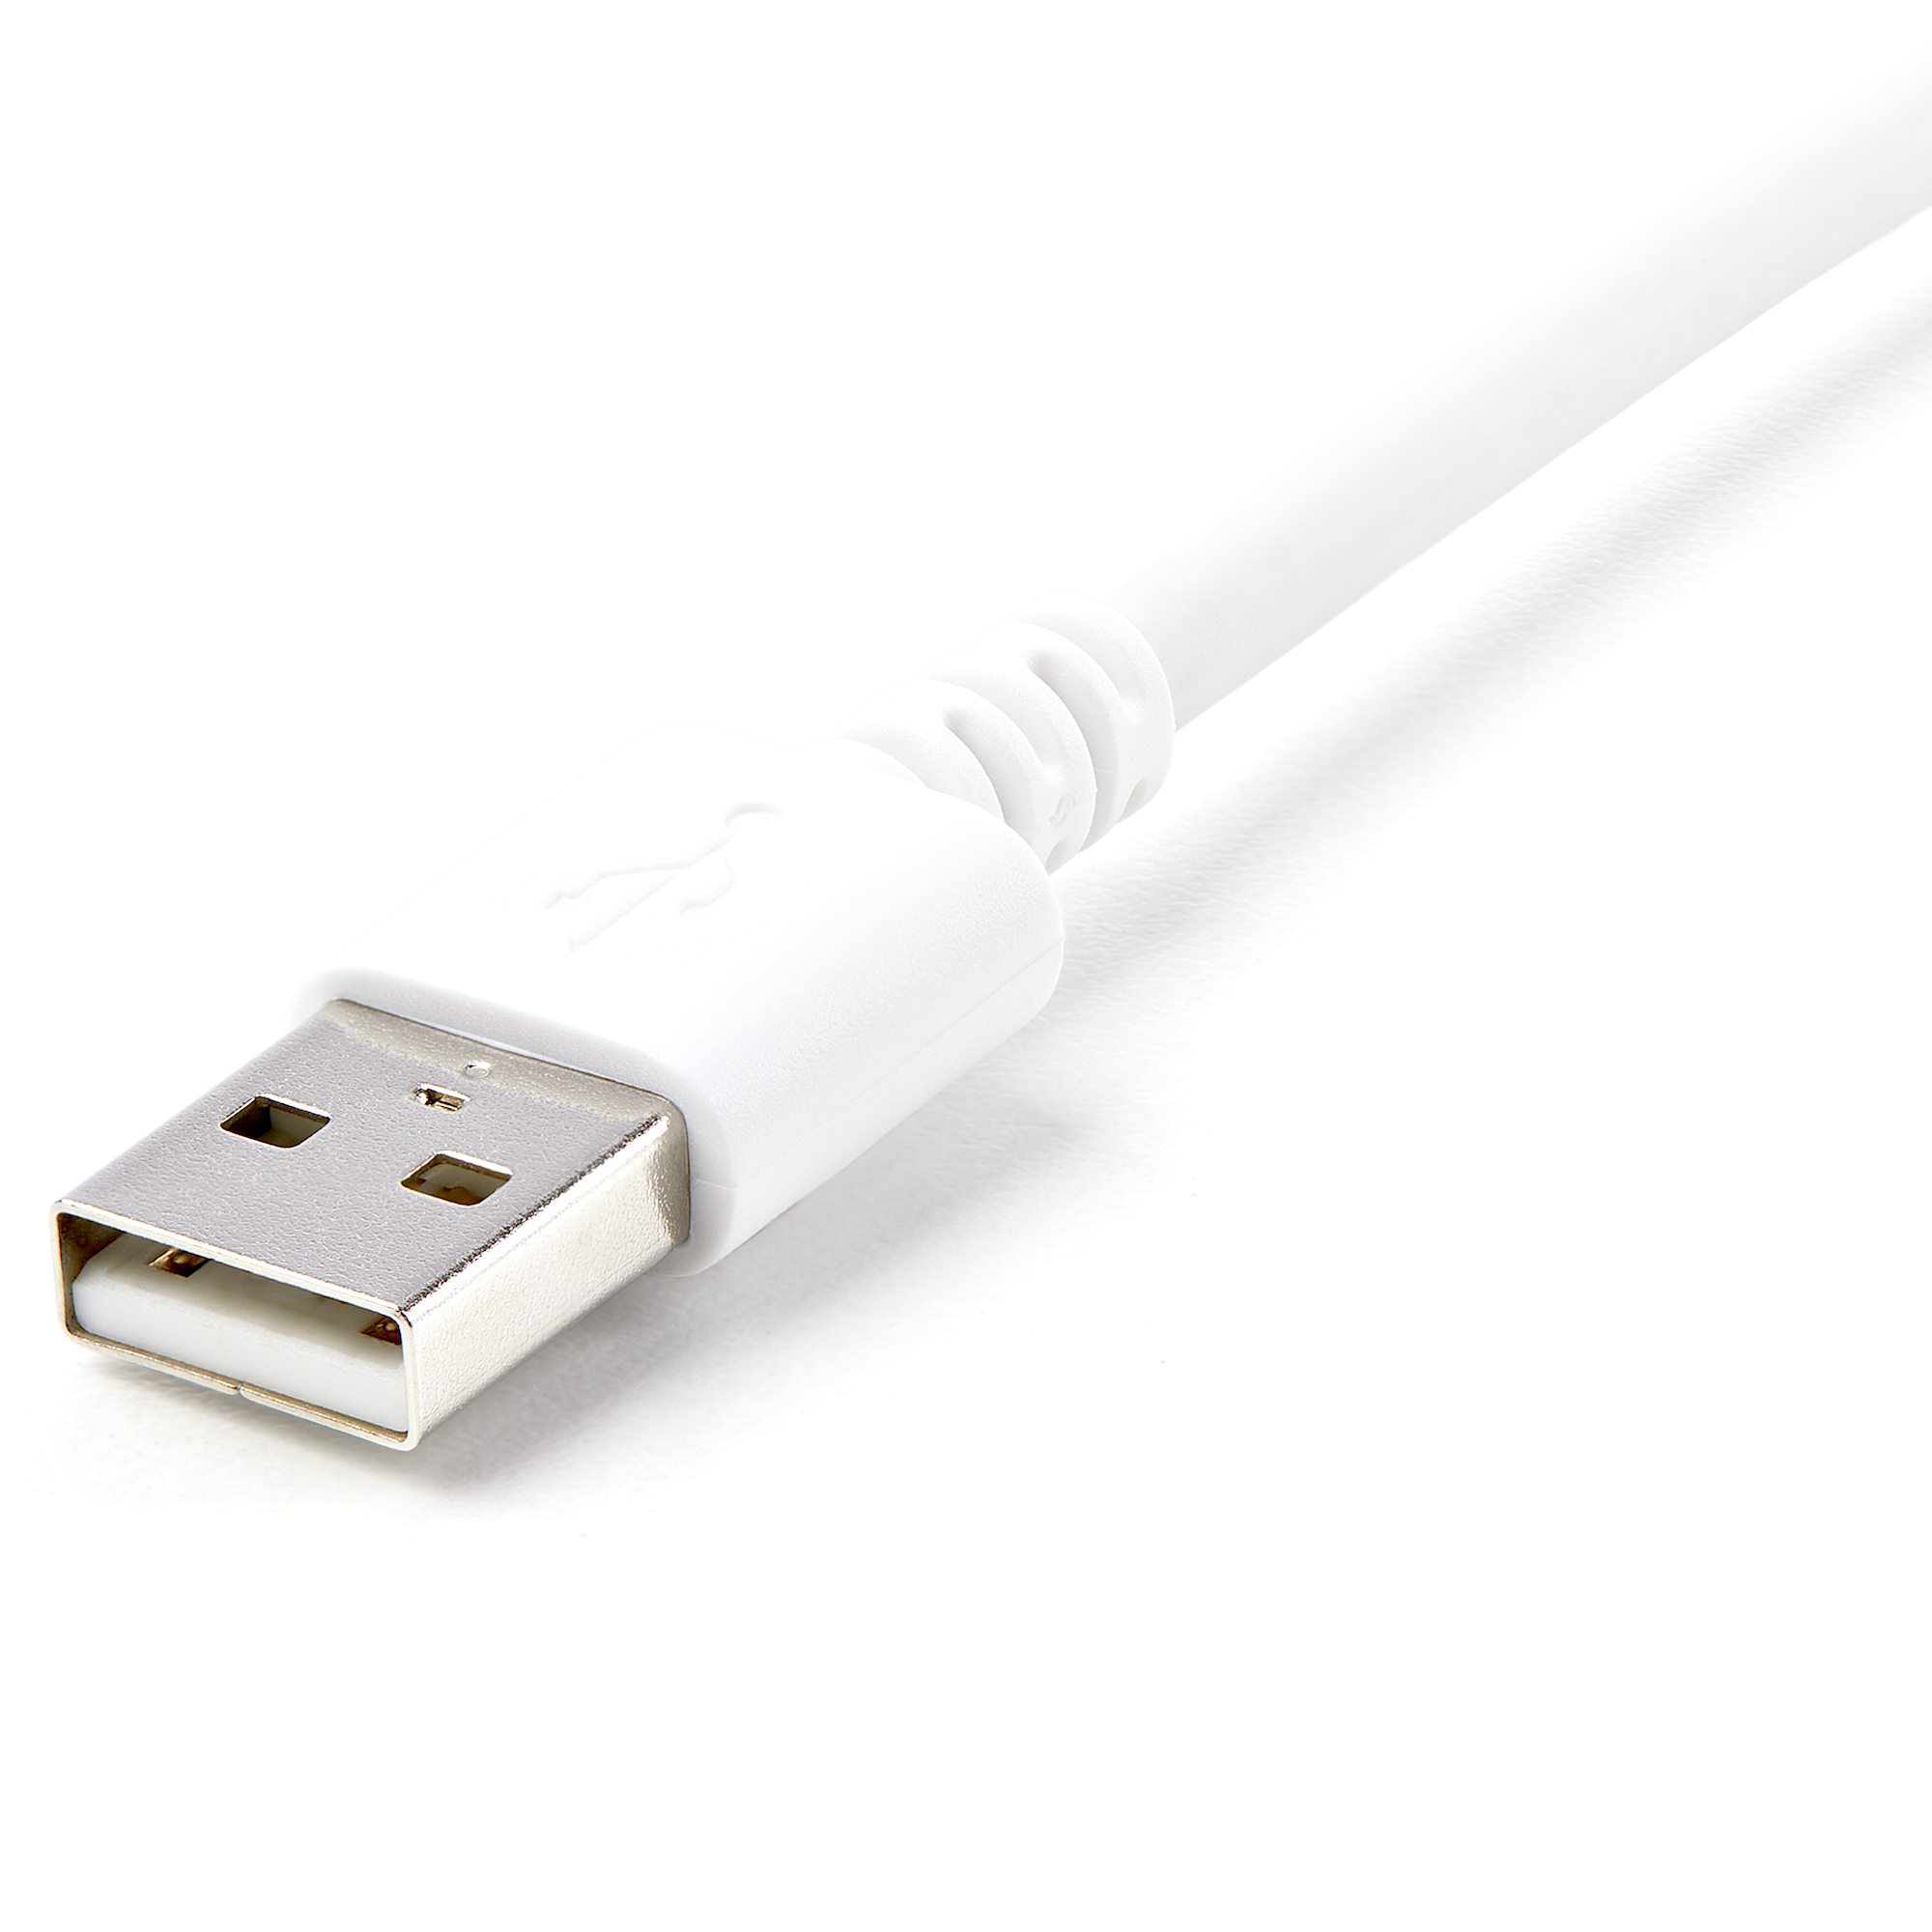 3m Apple Lightning Connector Kabel - Lightning Kabel